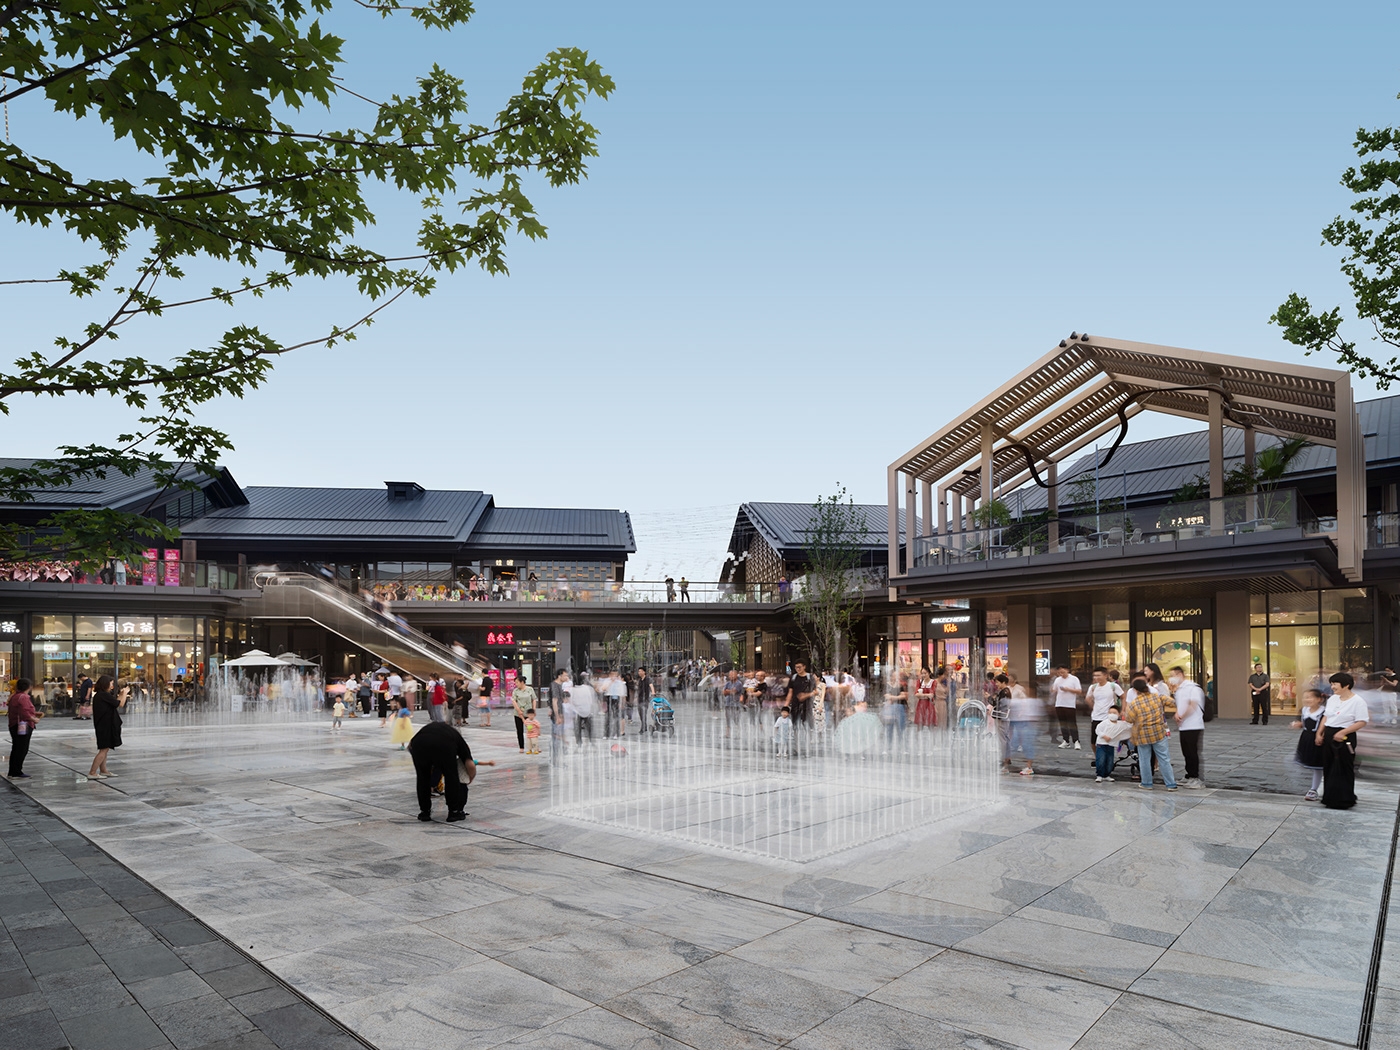 主题街区 公共空间 华润置地 商业空间设计 夏谷暑雨 艺术 装置